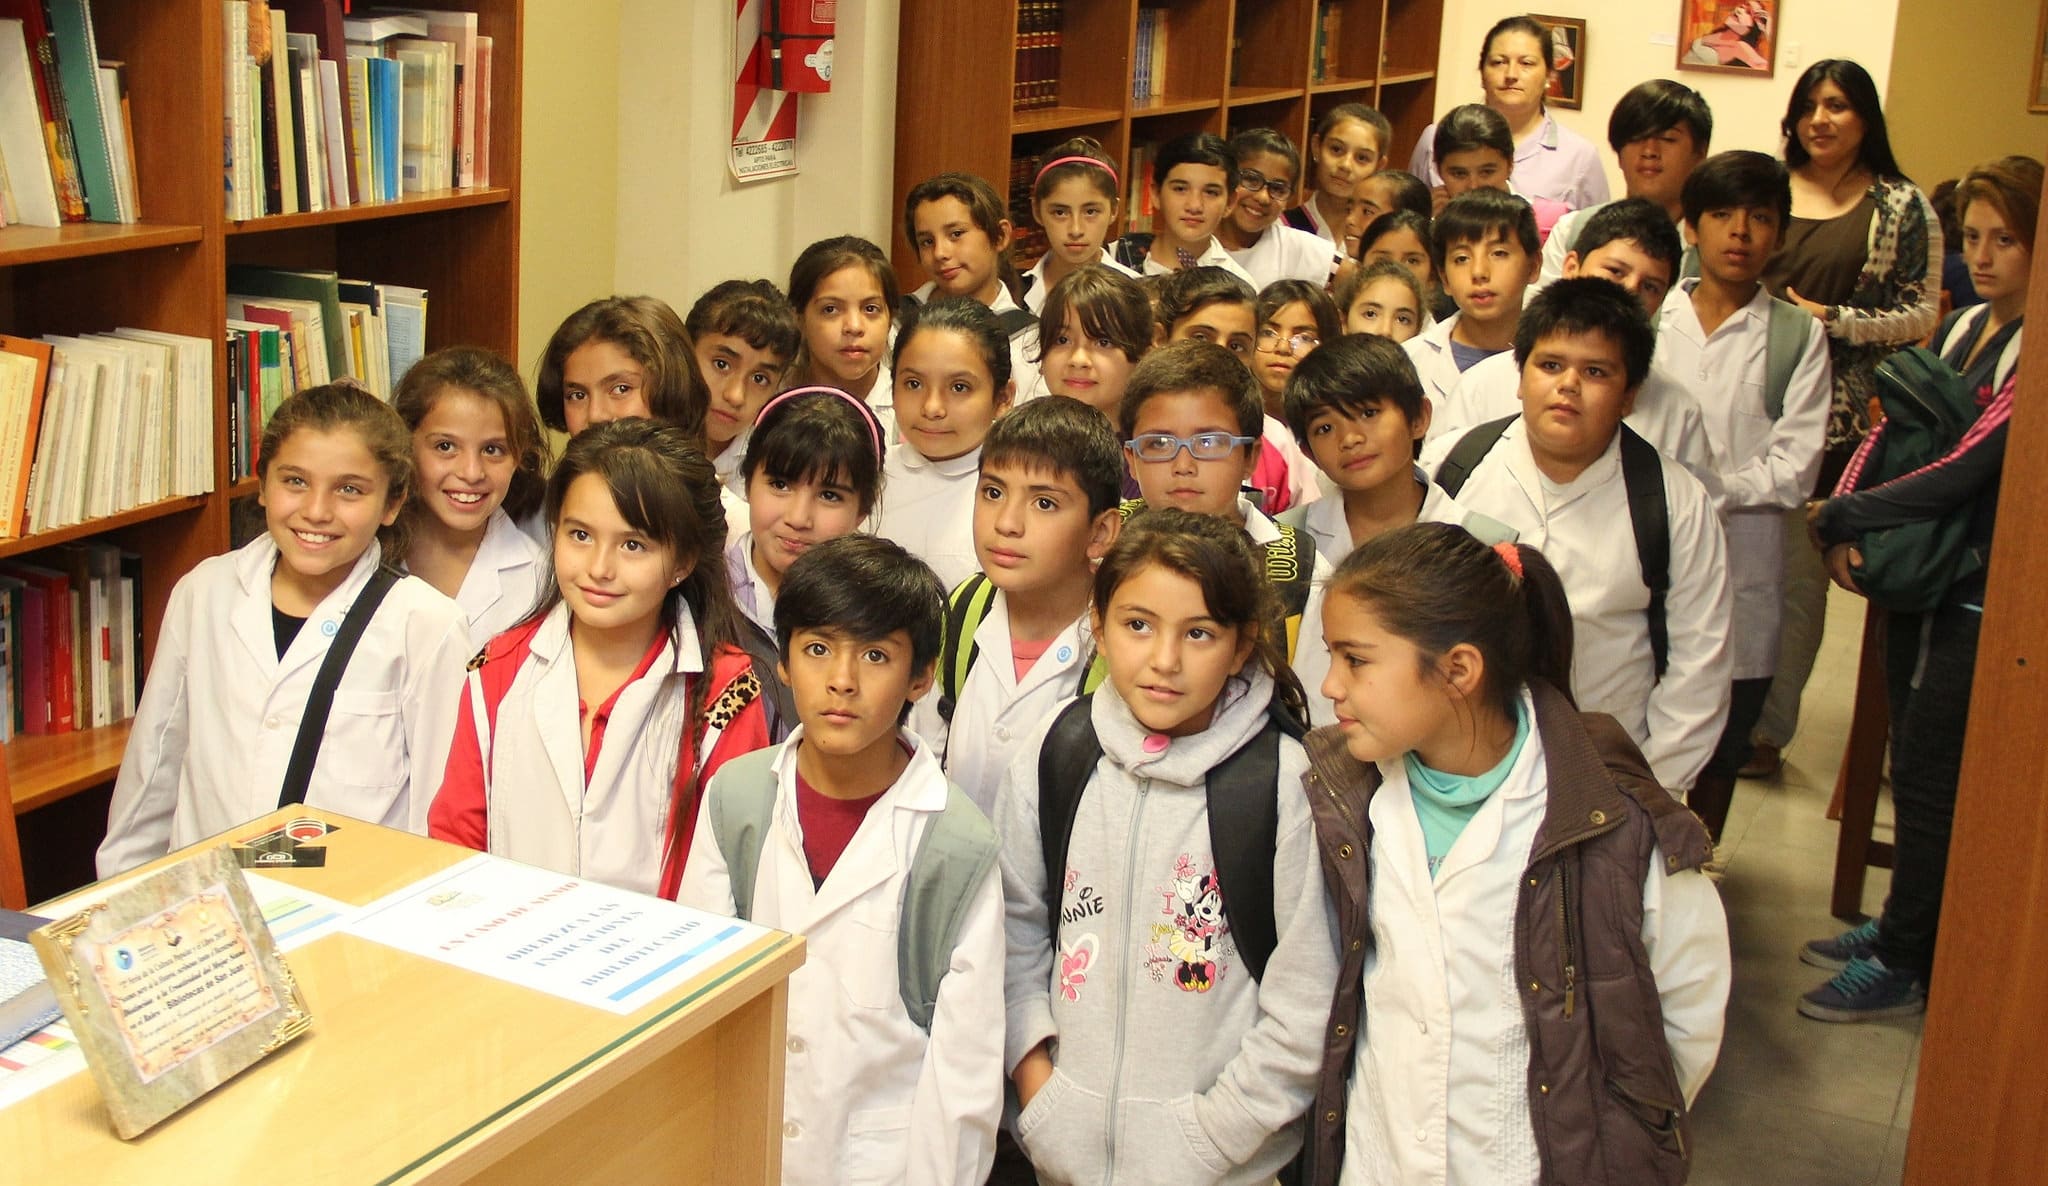 Alumnos y docentes de la escuela "Arturo Capdevilla" en la Biblioteca "Sarmiento Legislador".